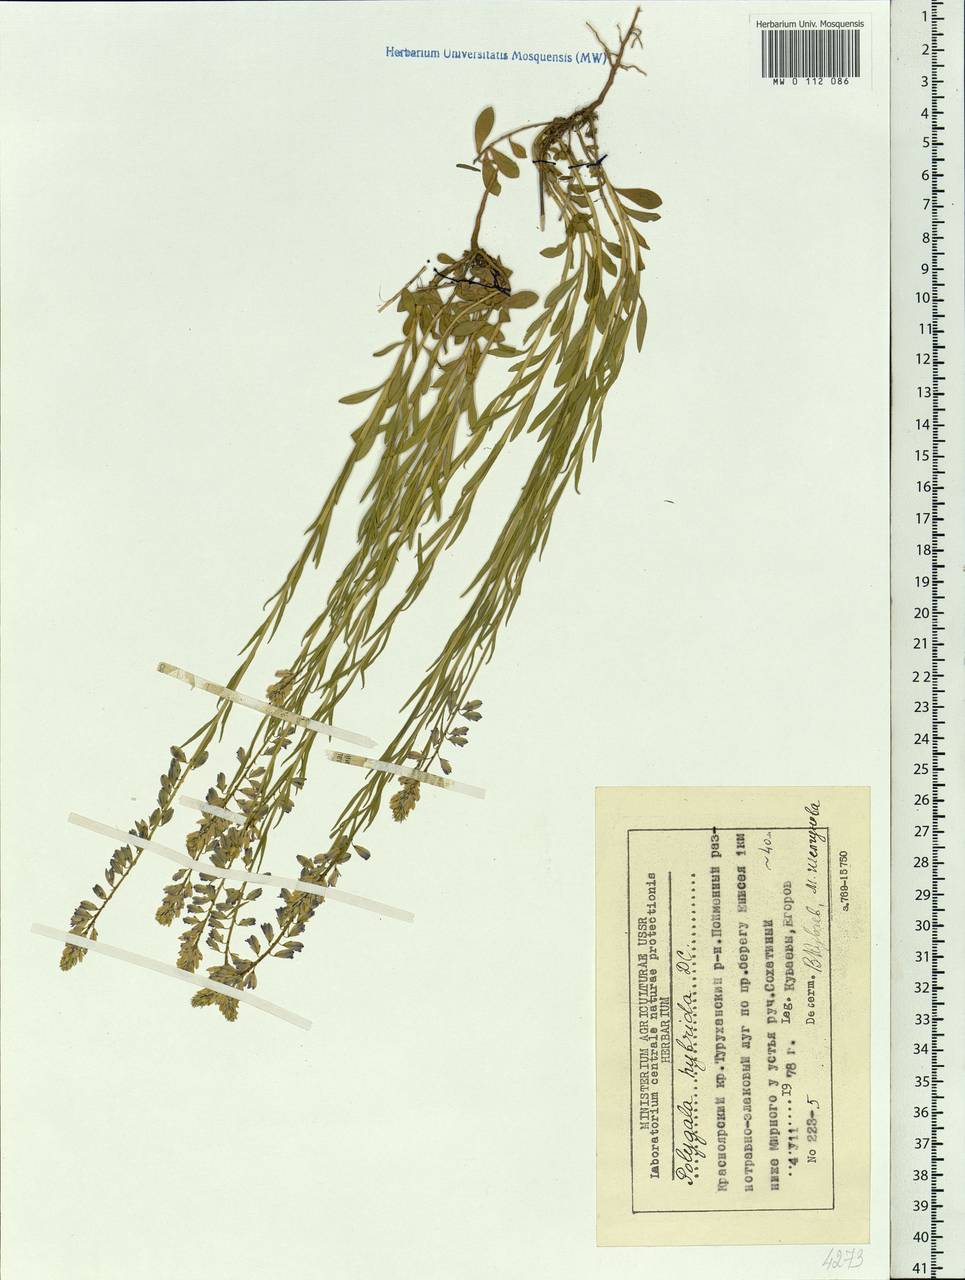 Polygala comosa subsp. comosa, Siberia, Central Siberia (S3) (Russia)